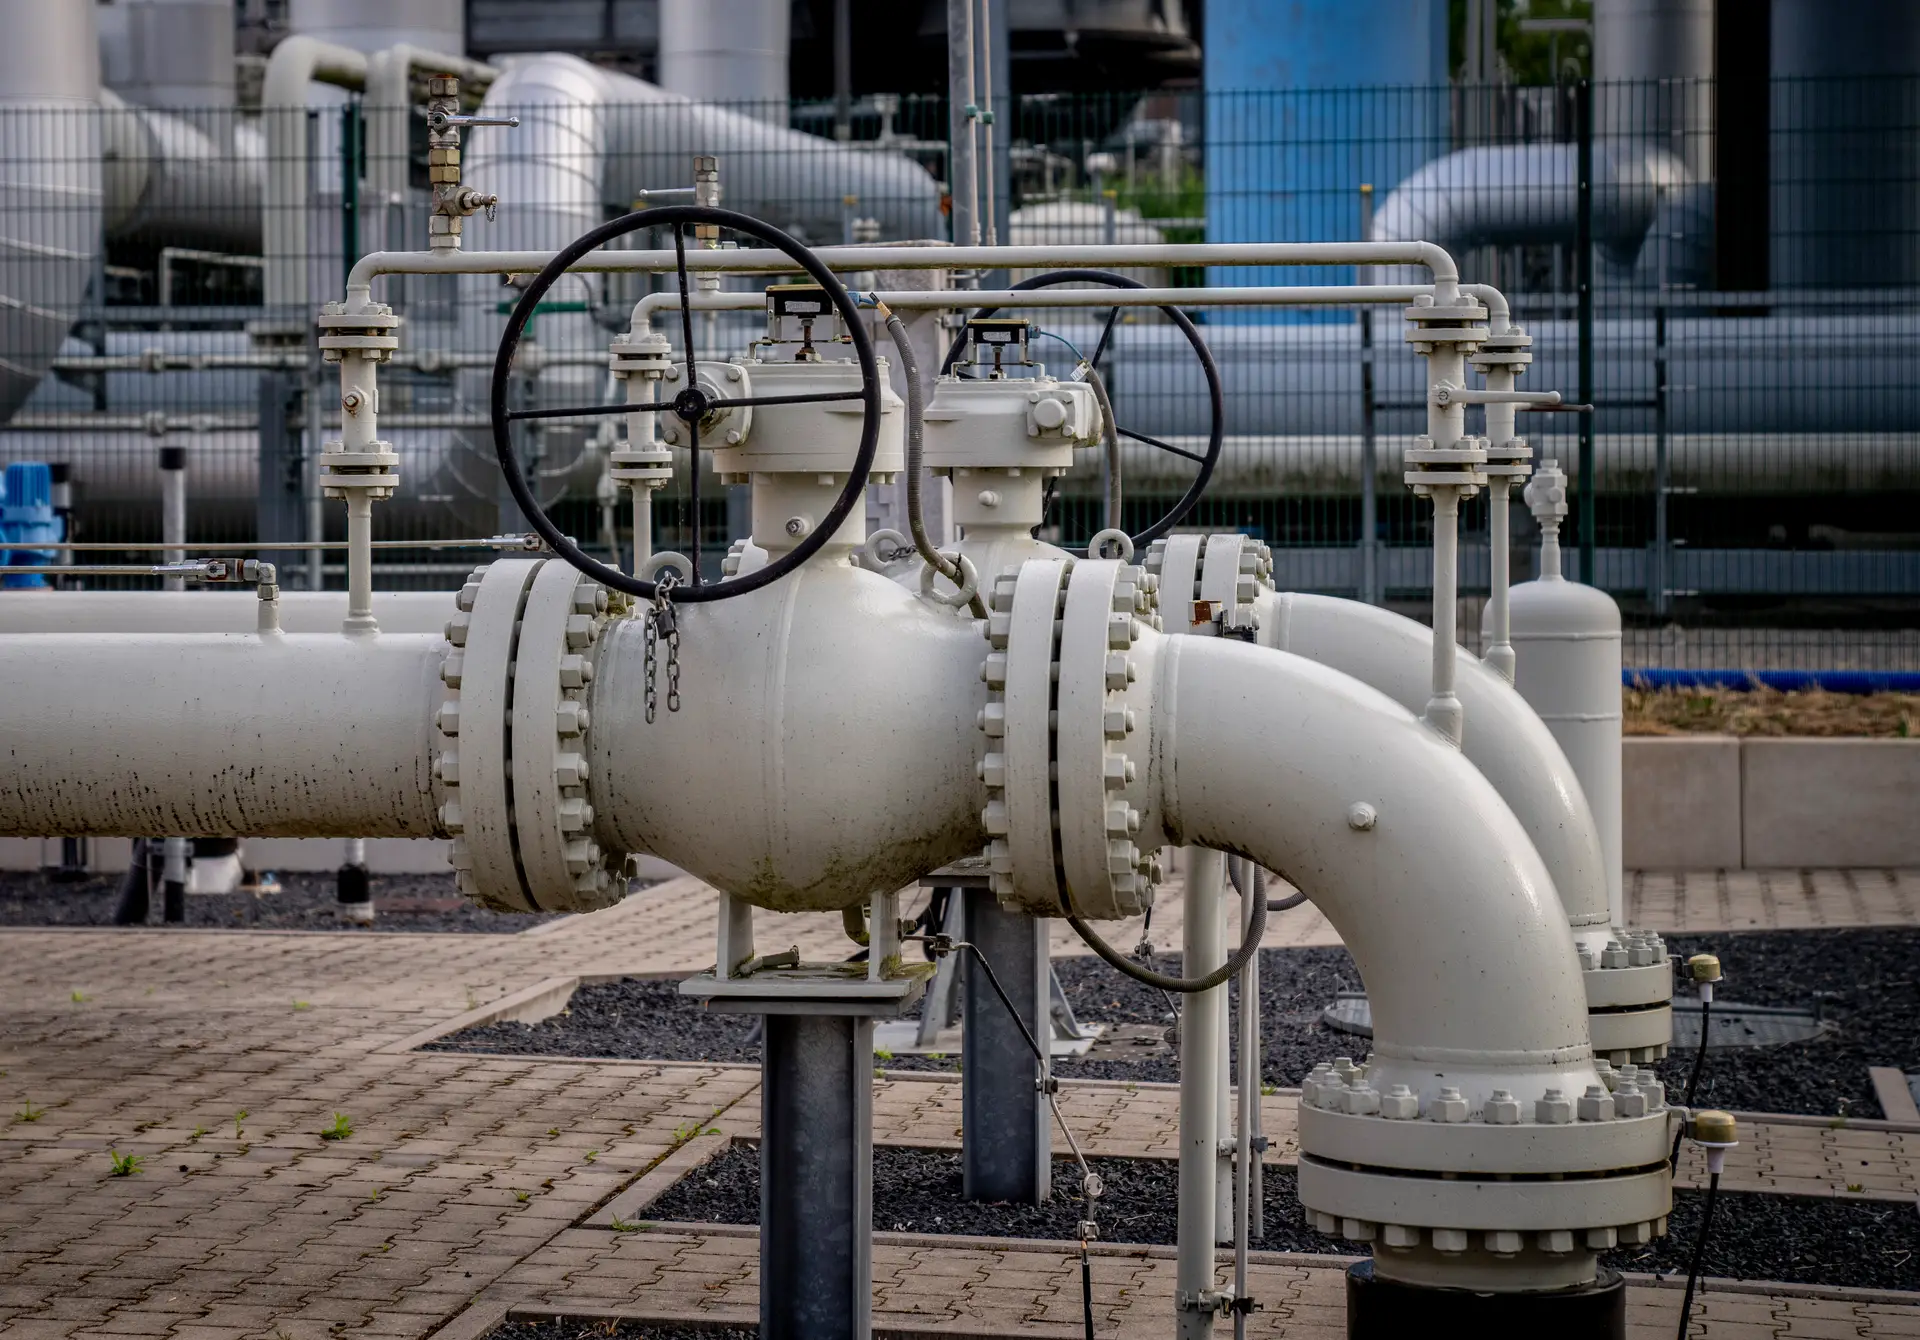 Dificuldades no fornecimento de gás devem-se a sanções ocidentais, diz Kremelin